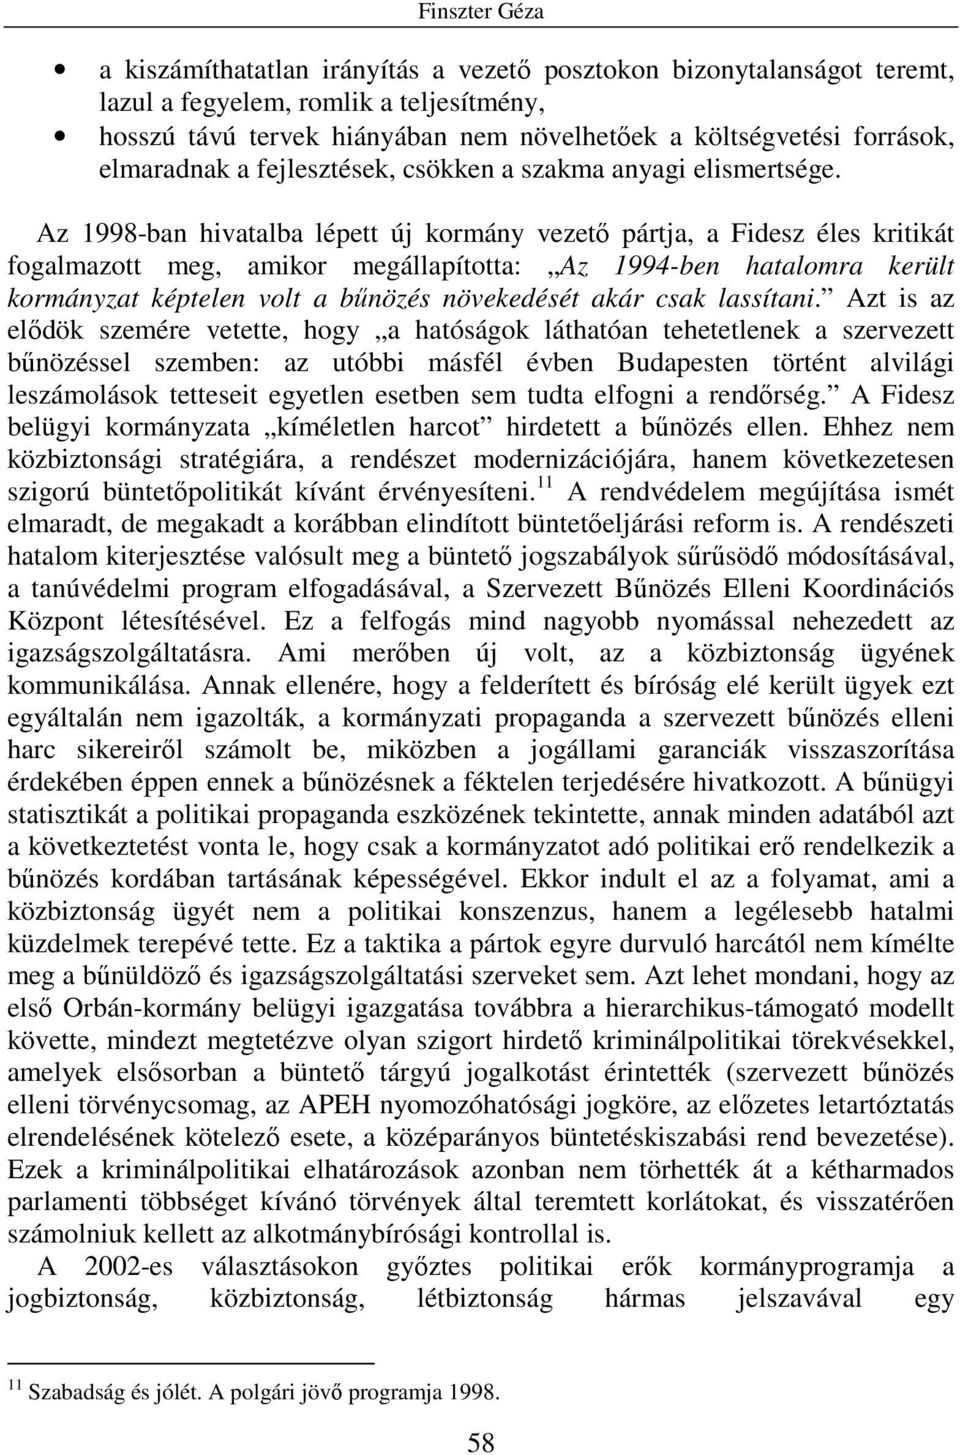 Az 1998-ban hivatalba lépett új kormány vezetı pártja, a Fidesz éles kritikát fogalmazott meg, amikor megállapította: Az 1994-ben hatalomra került kormányzat képtelen volt a bőnözés növekedését akár